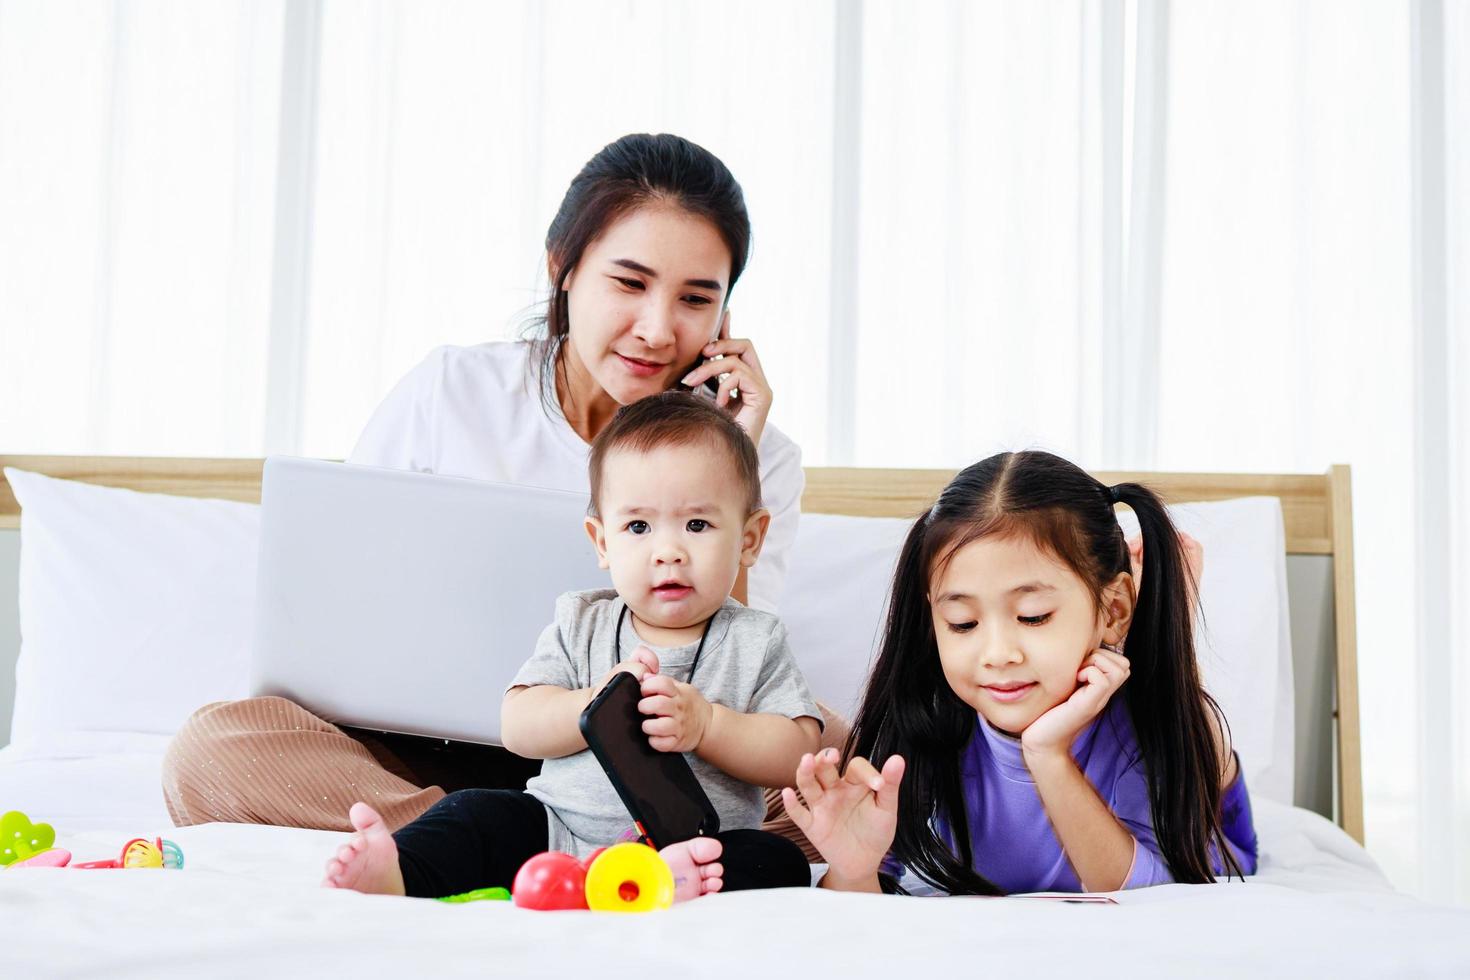 petite fille et bébé jouent ensemble aux jouets de bébé sur le lit pendant que la mère occupée travaille sur un ordinateur portable photo